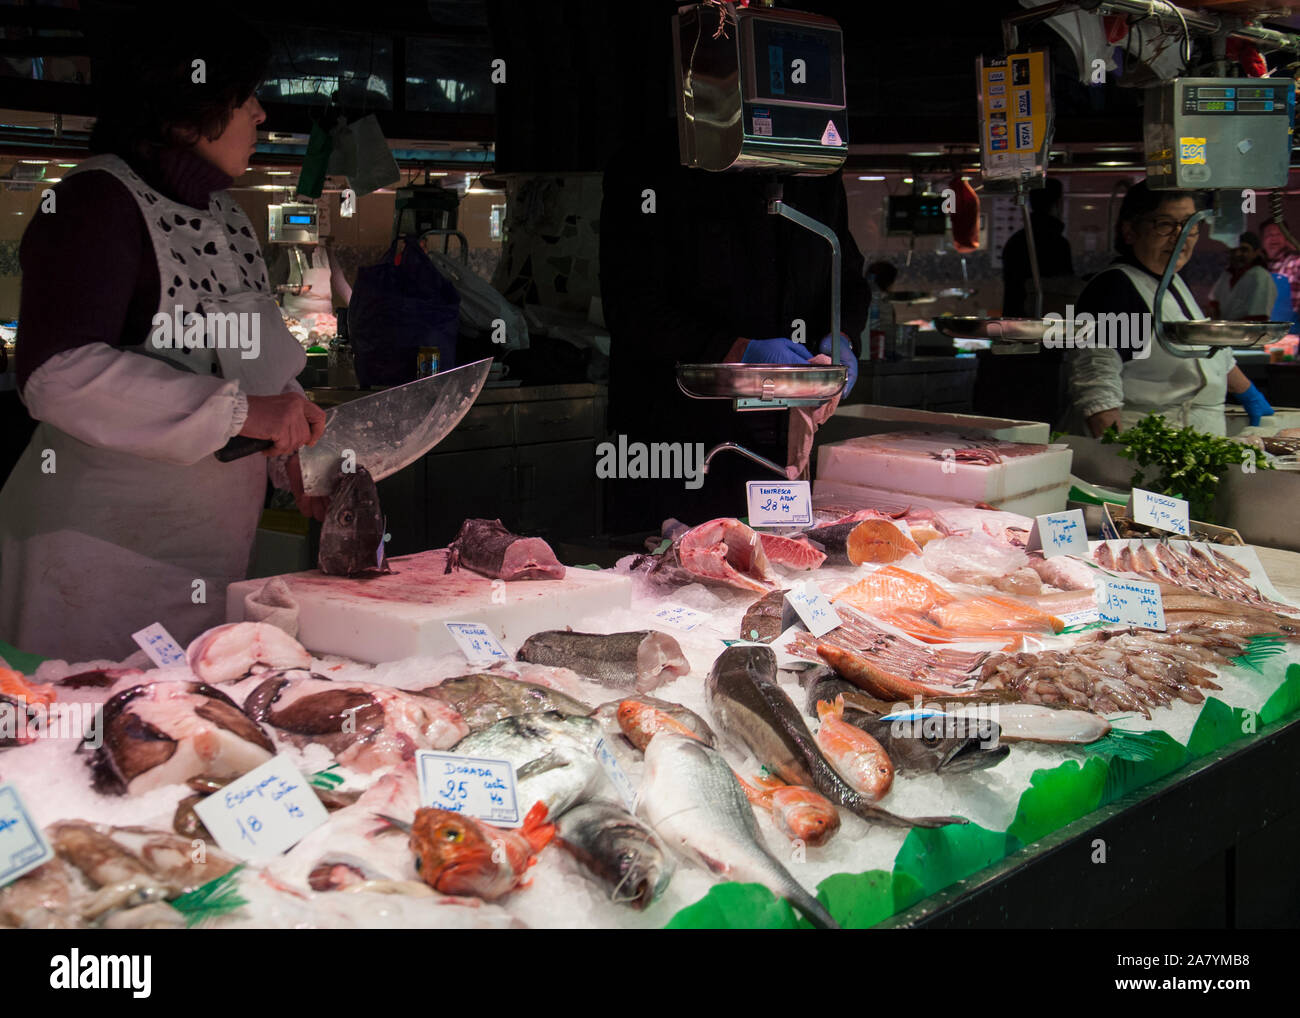 Barcelona, Spanien - 3. Mai 2017: Mercado de La Boqueria/La Boqueria Markt. Ein fischhändler Schneiden ein Fisch Kopf an einen gut sortierten Fische Marktstand. Stockfoto